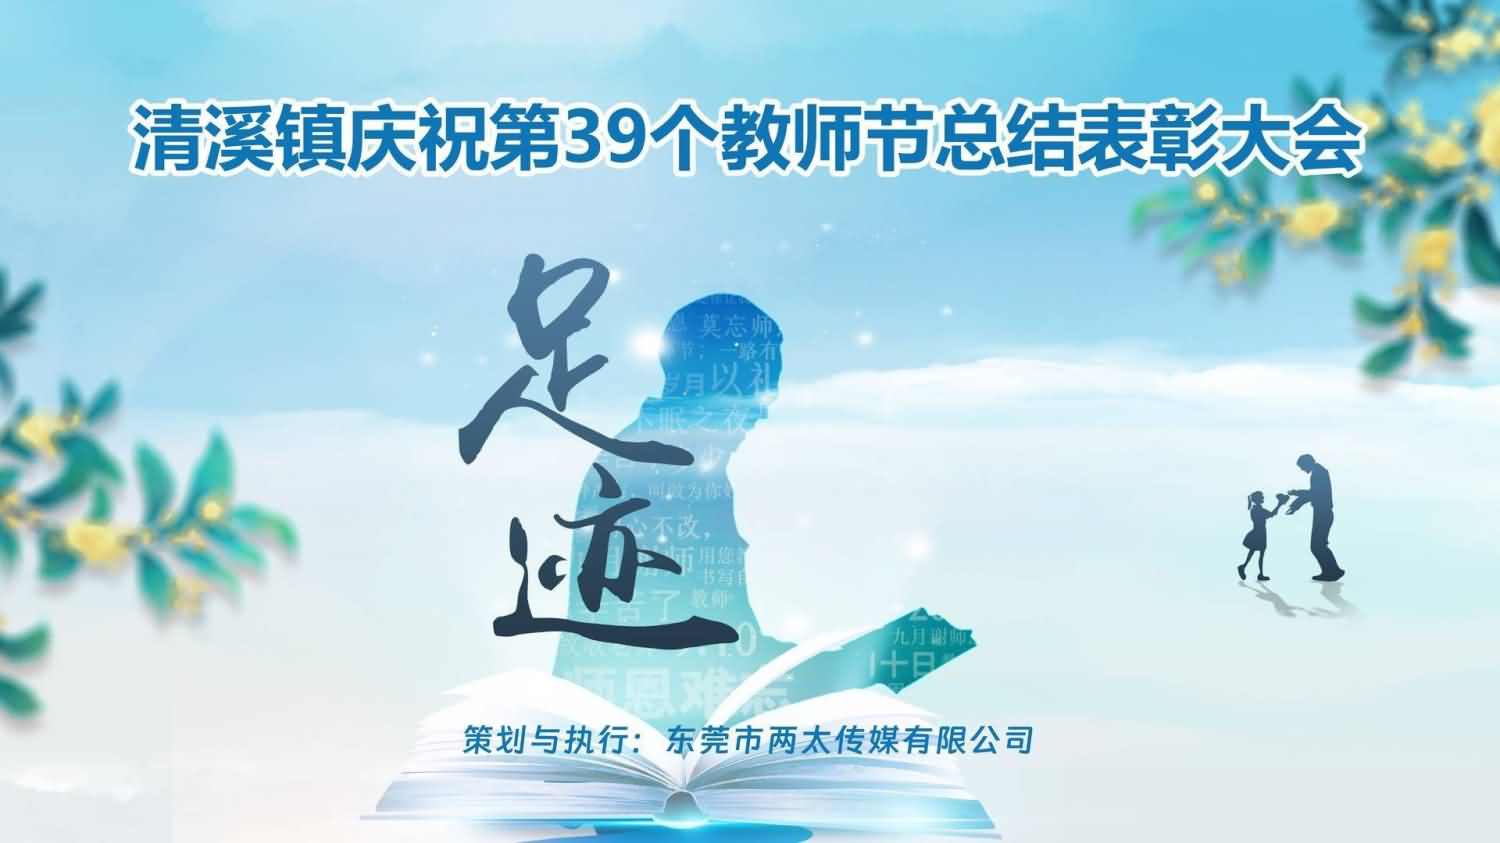 清溪镇庆祝第39个教师节总结表彰大会